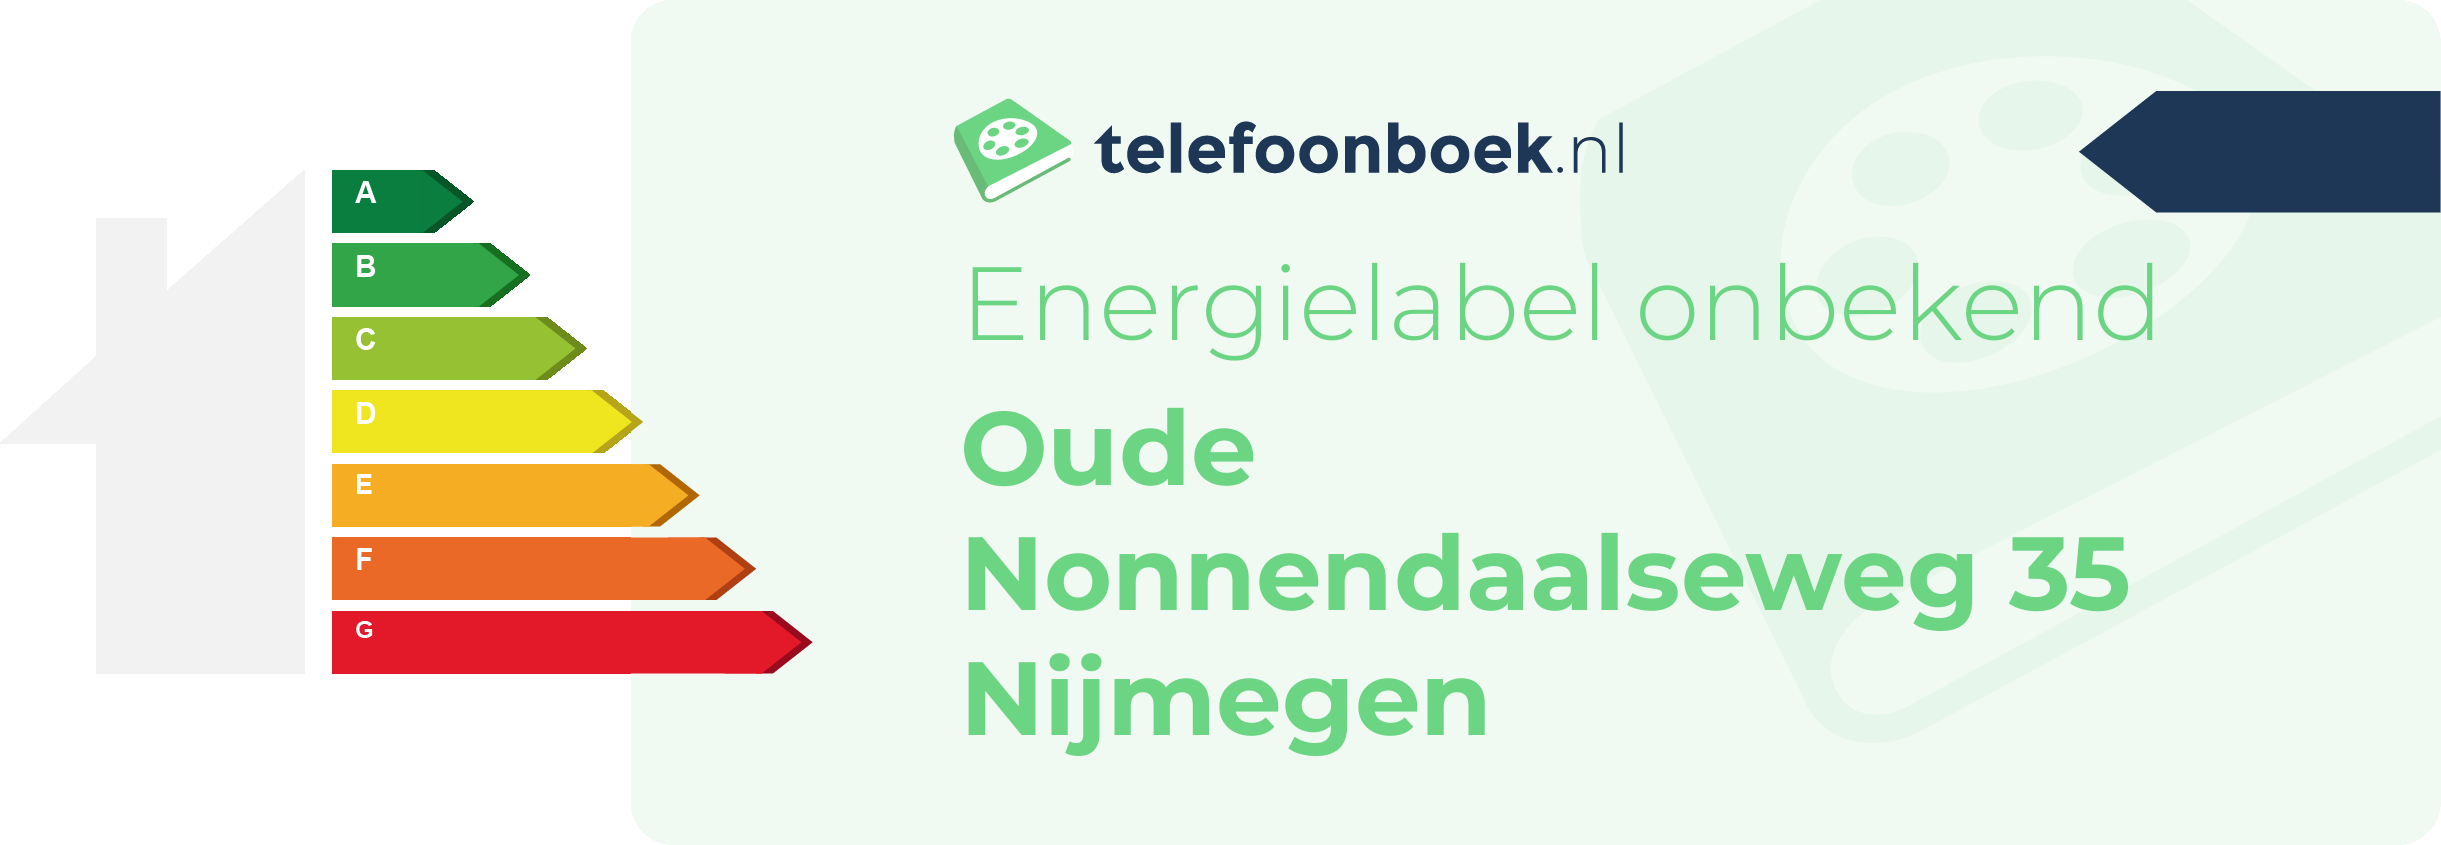 Energielabel Oude Nonnendaalseweg 35 Nijmegen